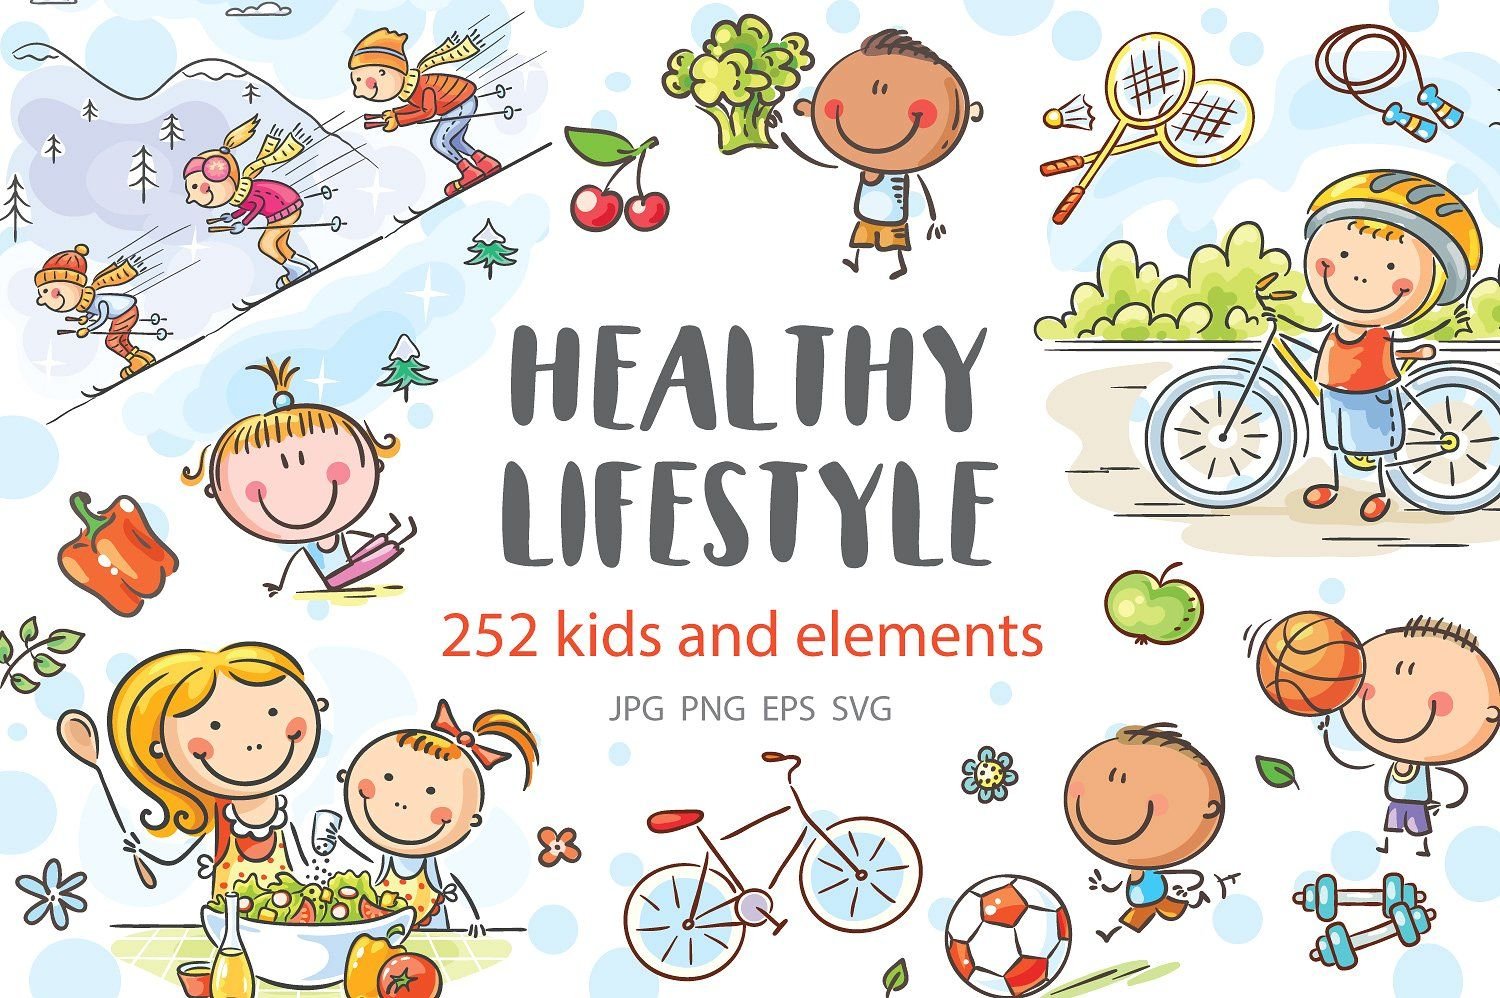 Topic lifestyle. Картинки на тему healthy Lifestyle. Постер healthy Lifestyle. Плакат на тему healthy Lifestyle. Be healthy плакат.